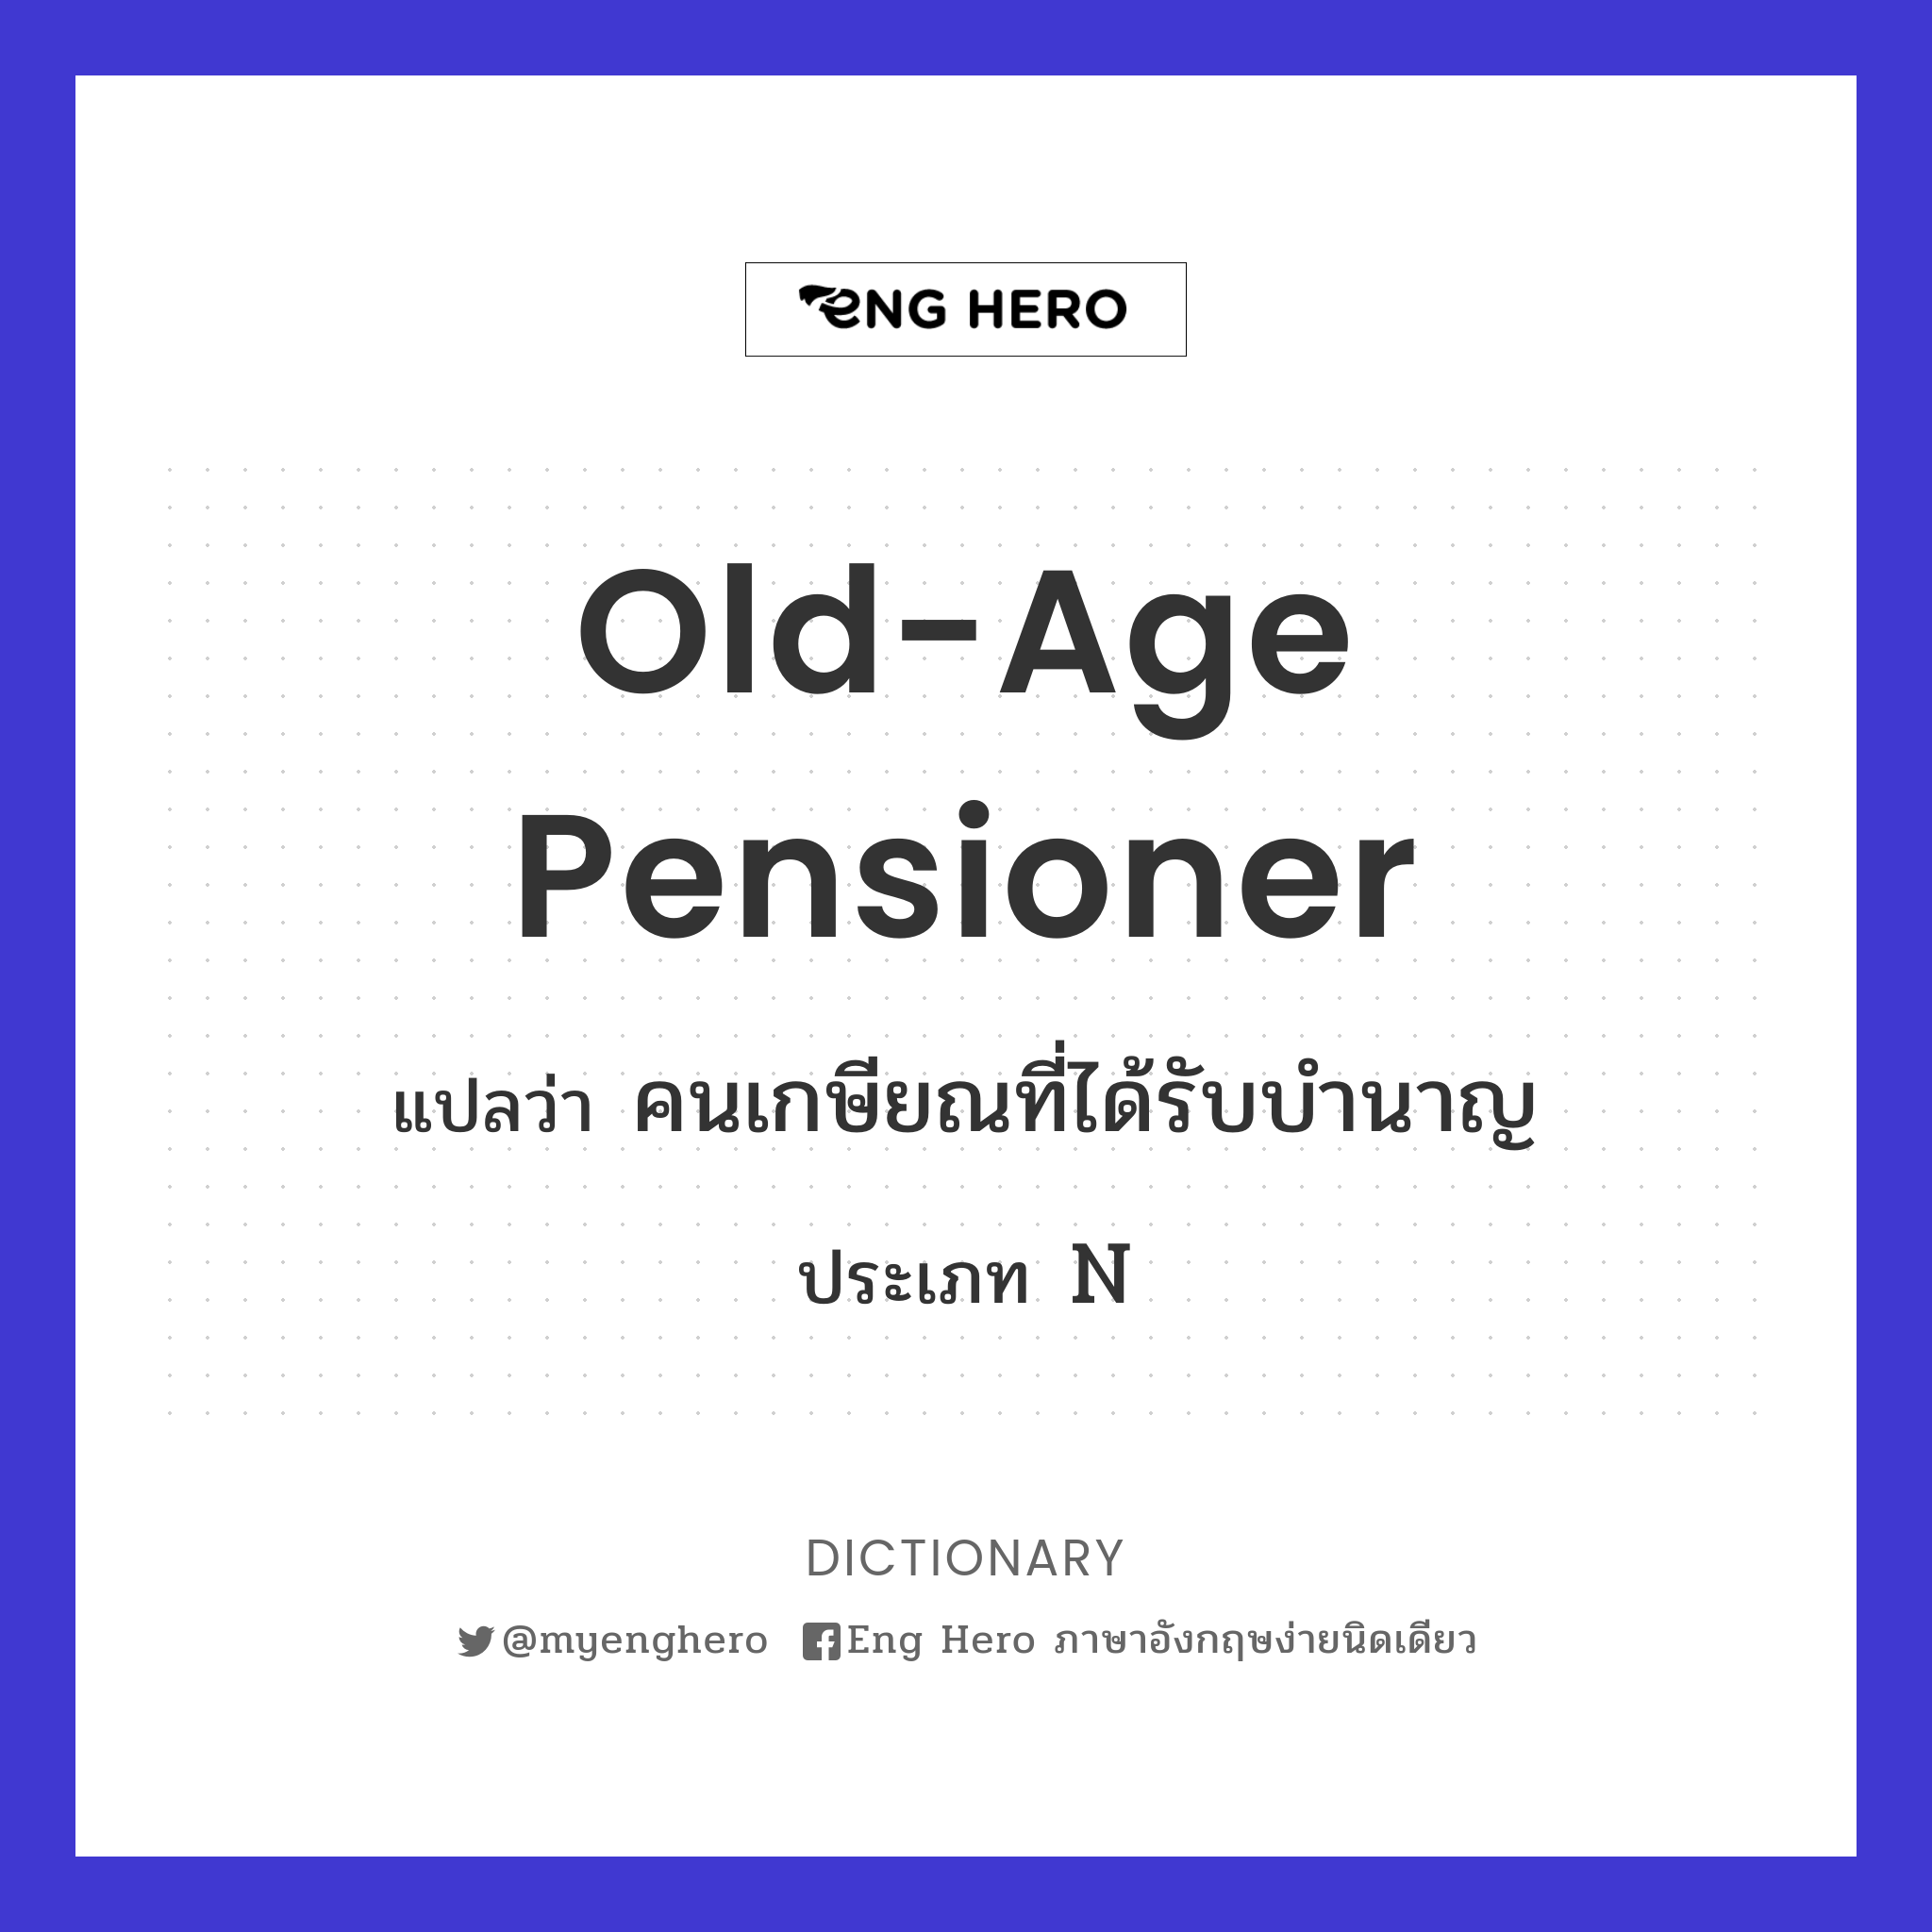 old-age pensioner